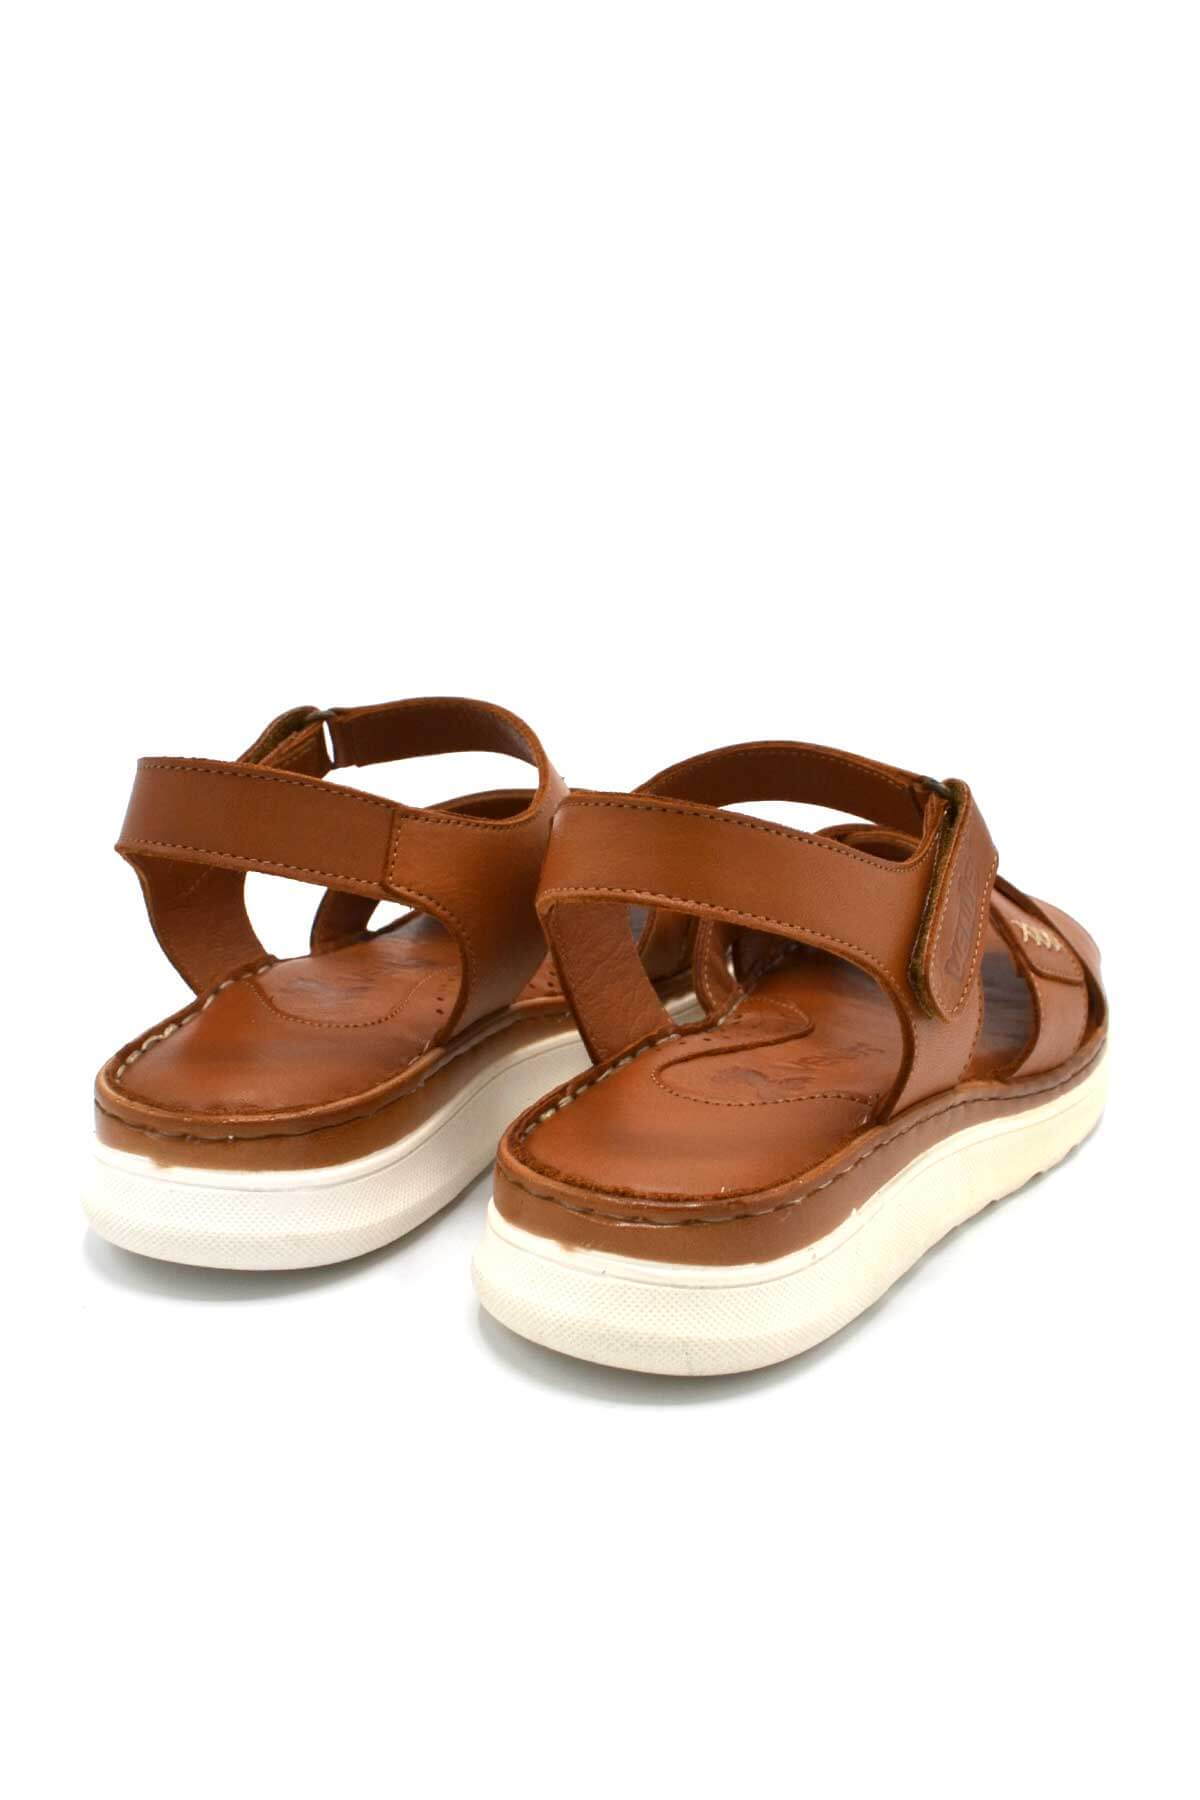 Kadın Comfort Deri Sandalet Taba 22981709 - Thumbnail